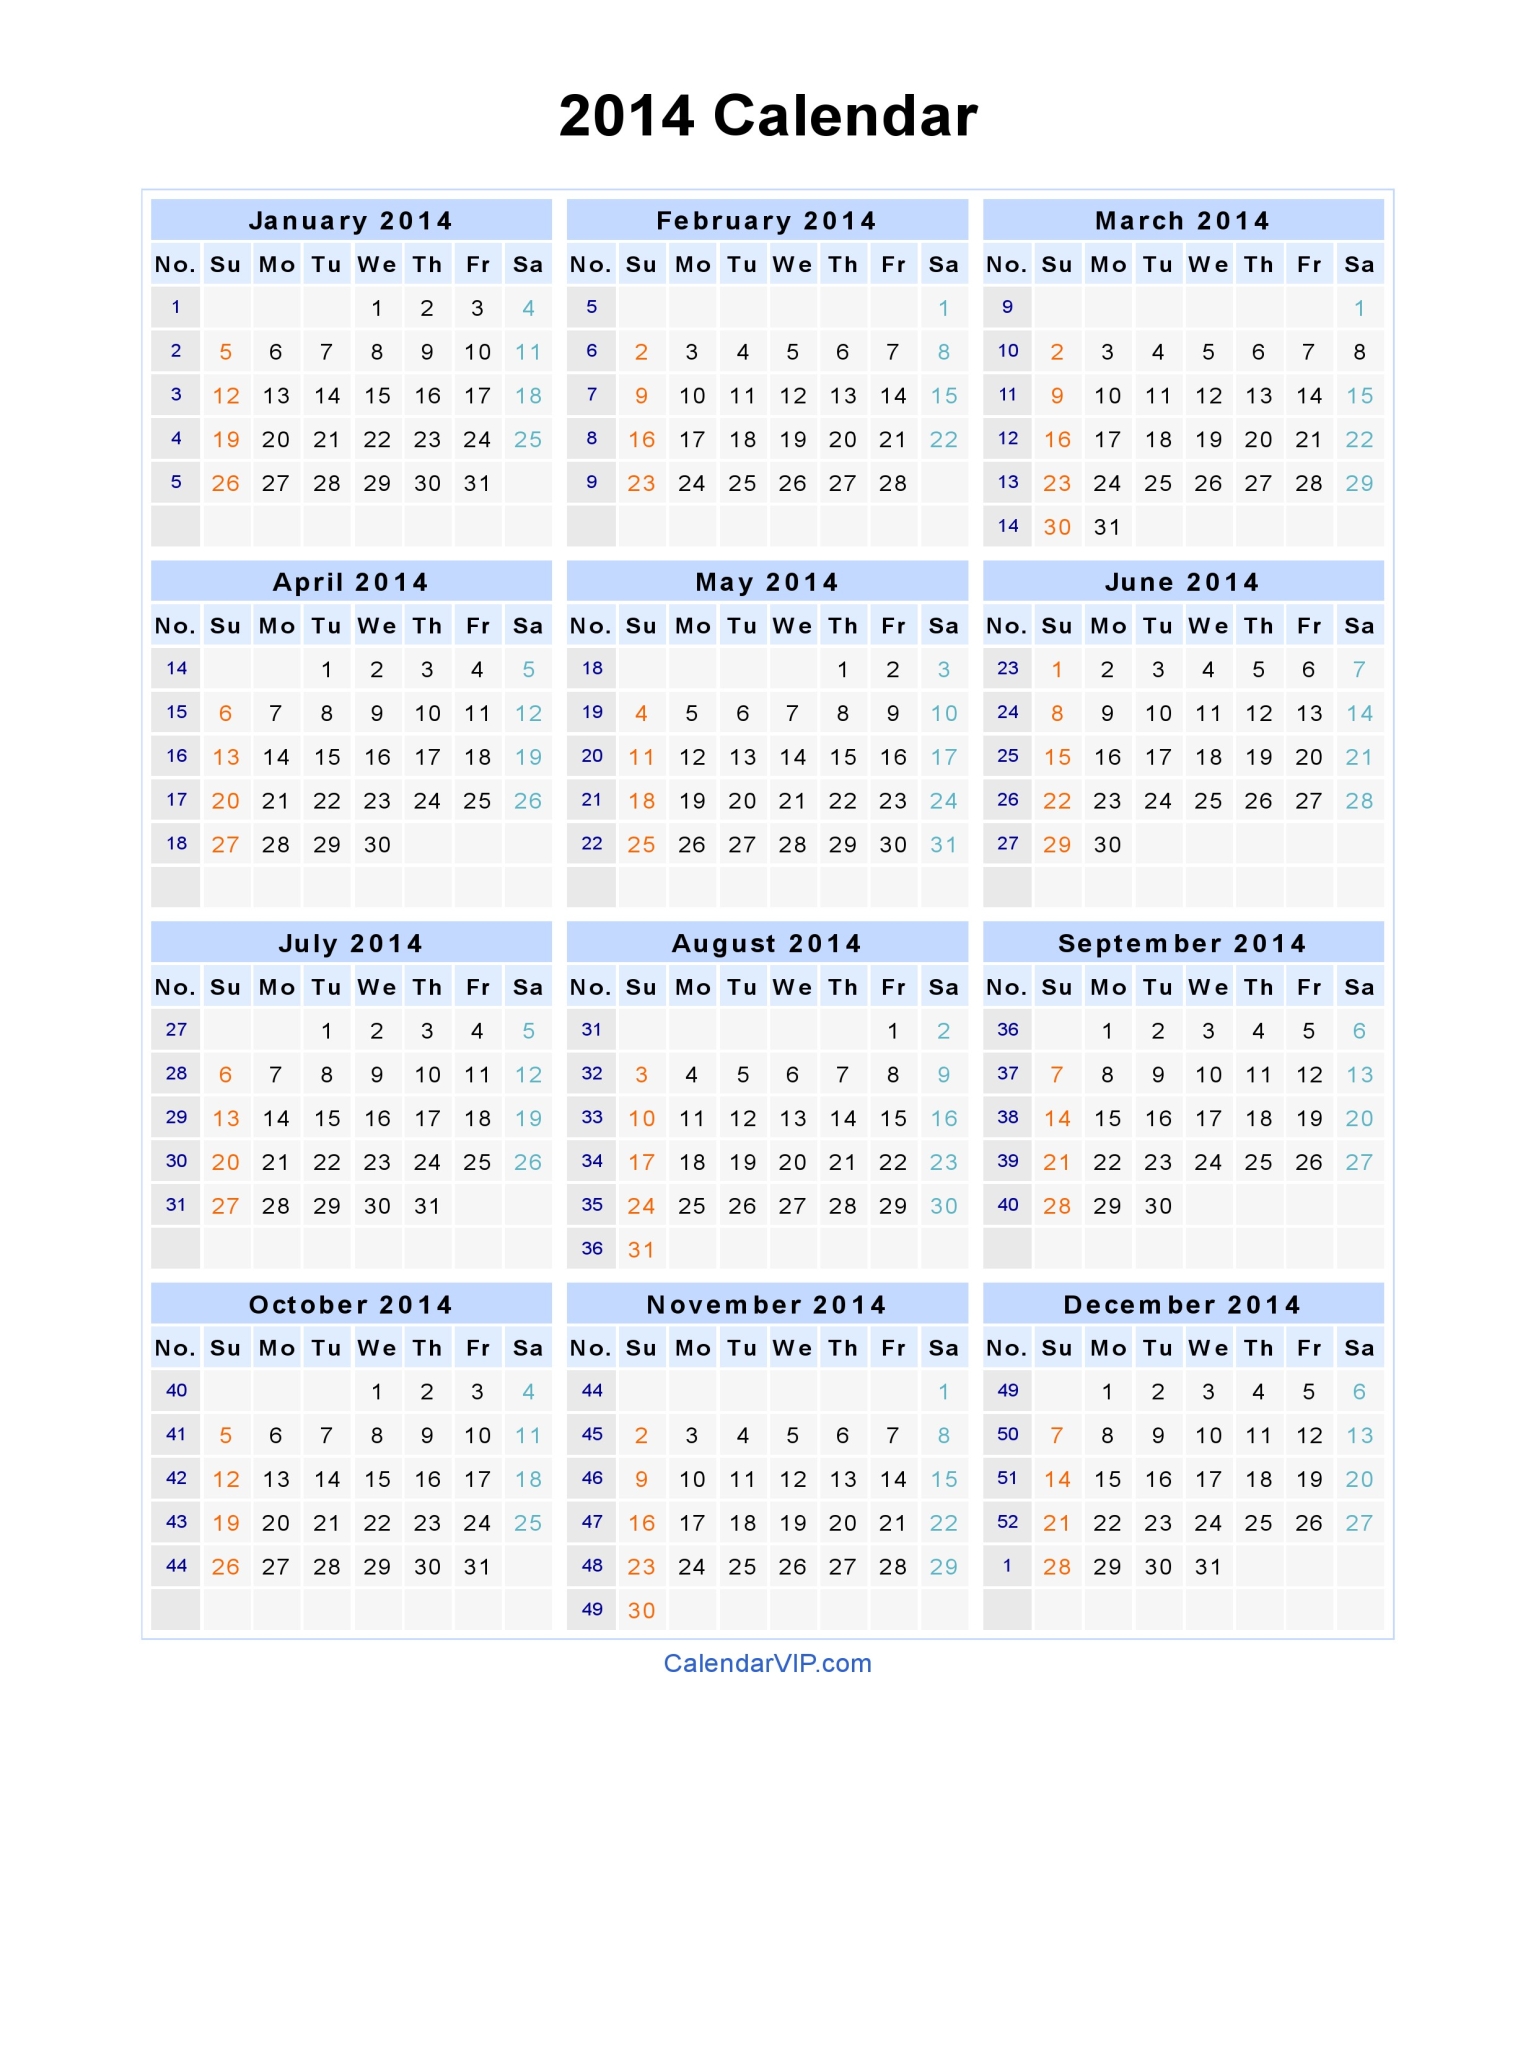 2014 Calendar - Blank Printable Calendar Template in PDF Word Excel
